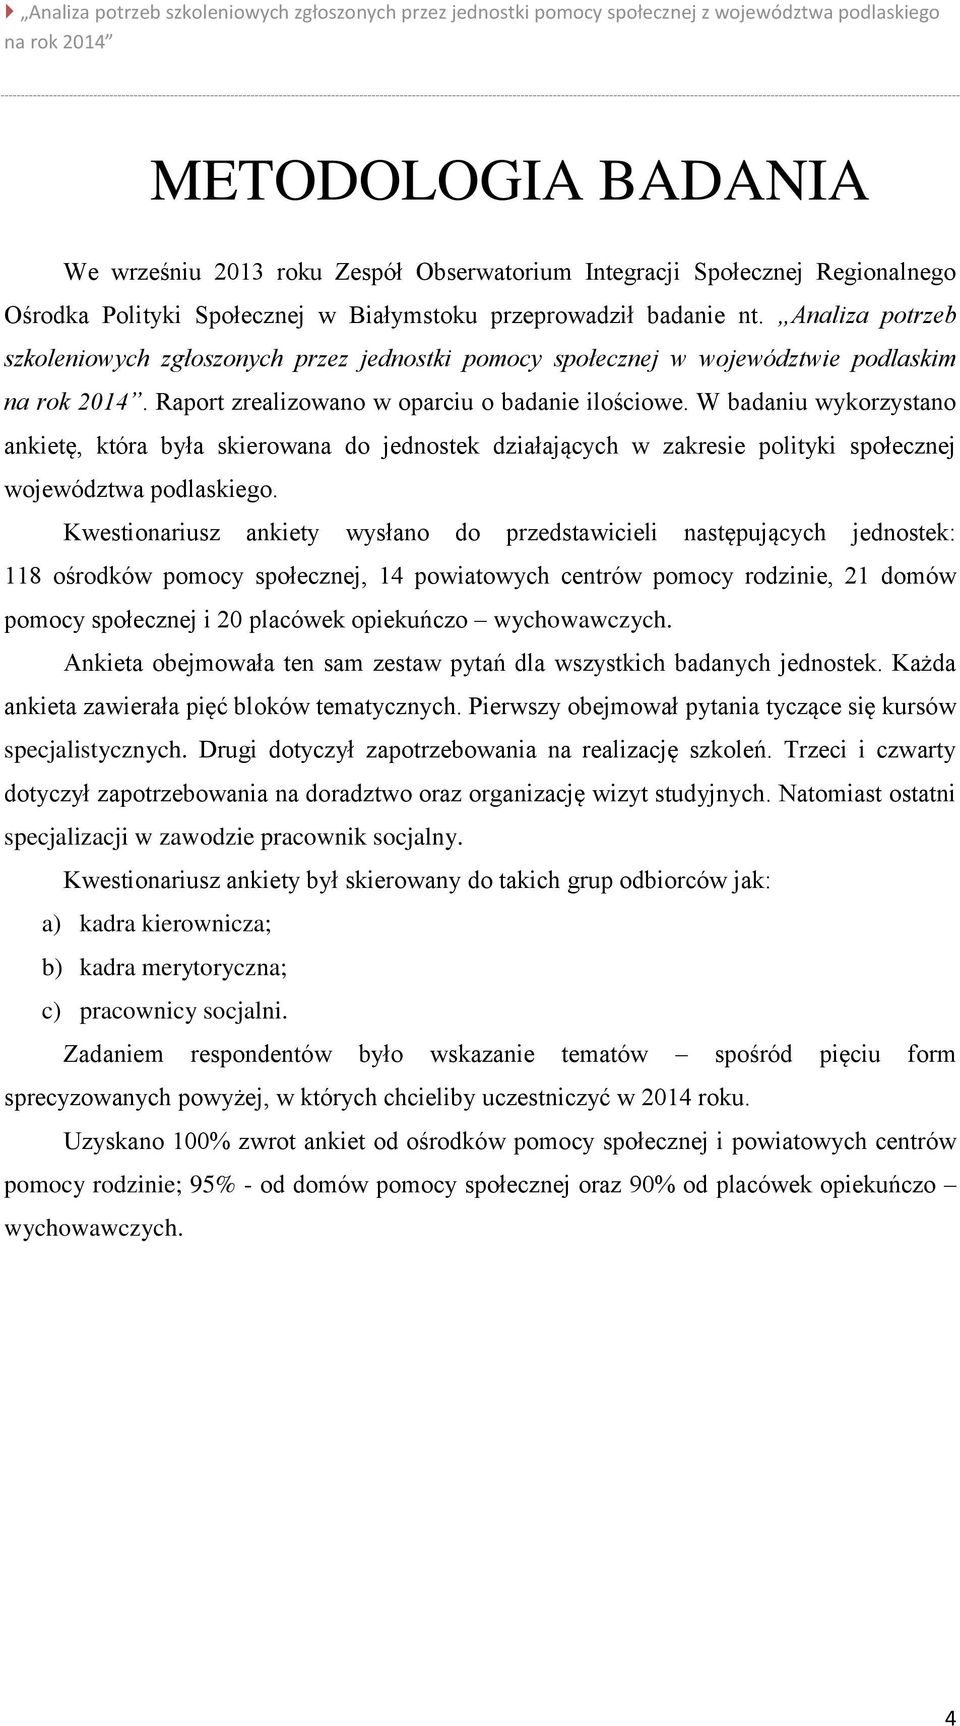 W badaniu wykorzystano ankietę, która była skierowana do jednostek działających w zakresie polityki społecznej województwa podlaskiego.